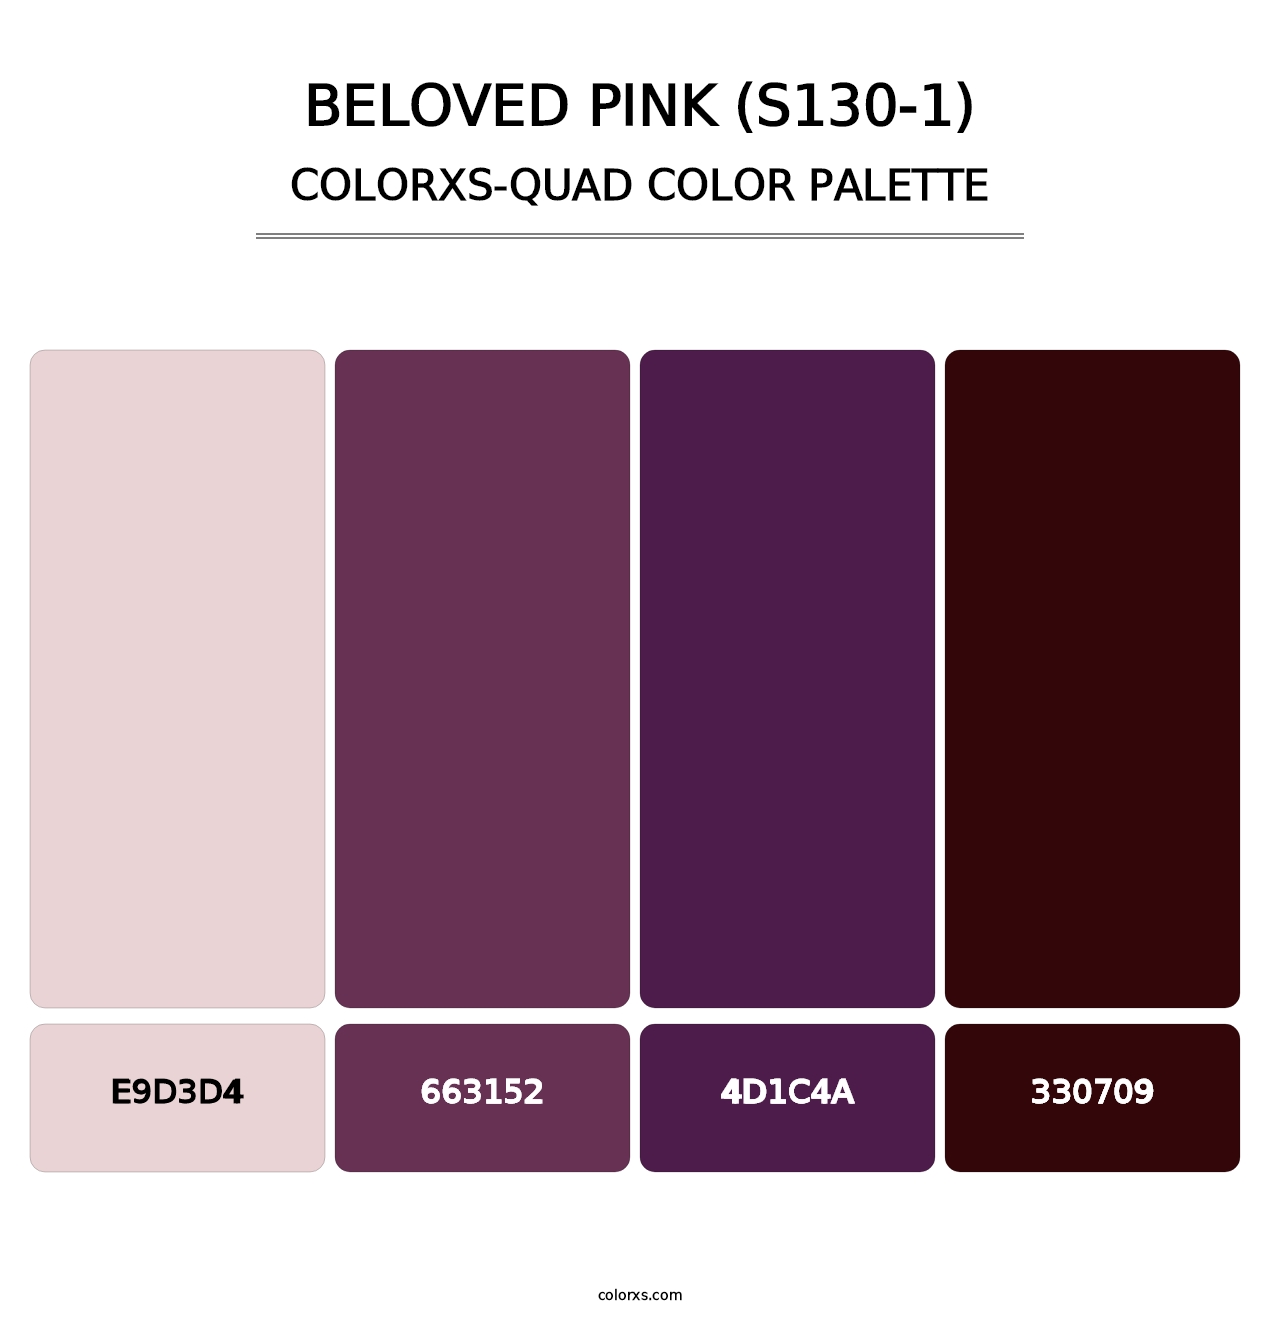 Beloved Pink (S130-1) - Colorxs Quad Palette